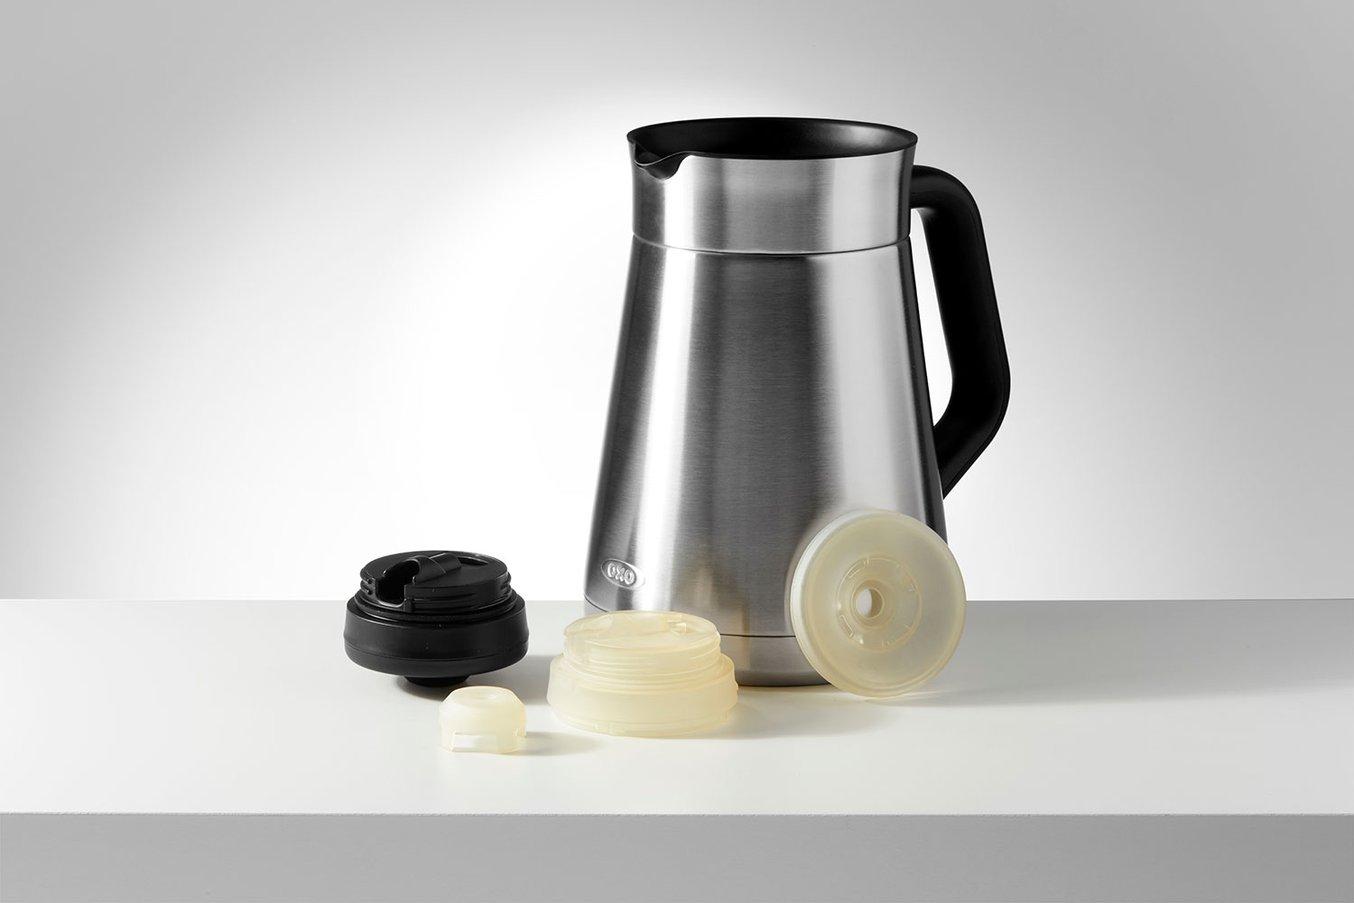 OXOはコーヒーメーカーのBarista Brain 9の設計プロセスにおいて、High Tempレジンで熱湯に触れる機能部品の試作品を製作している。